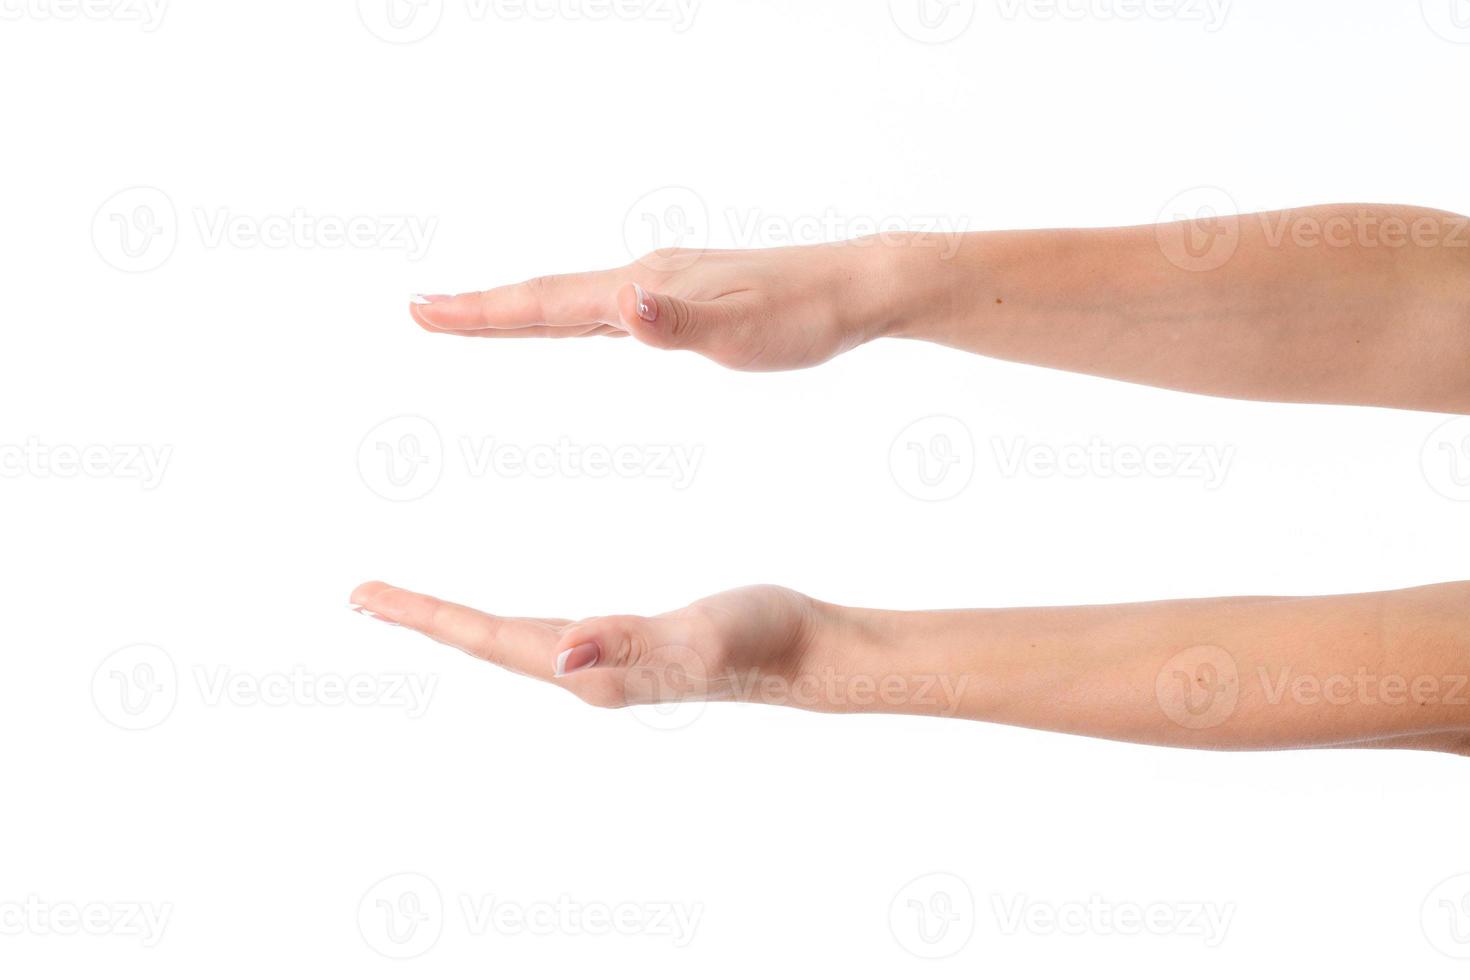 les mains des femmes sont tendues l'une en face de l'autre isolées sur fond blanc photo